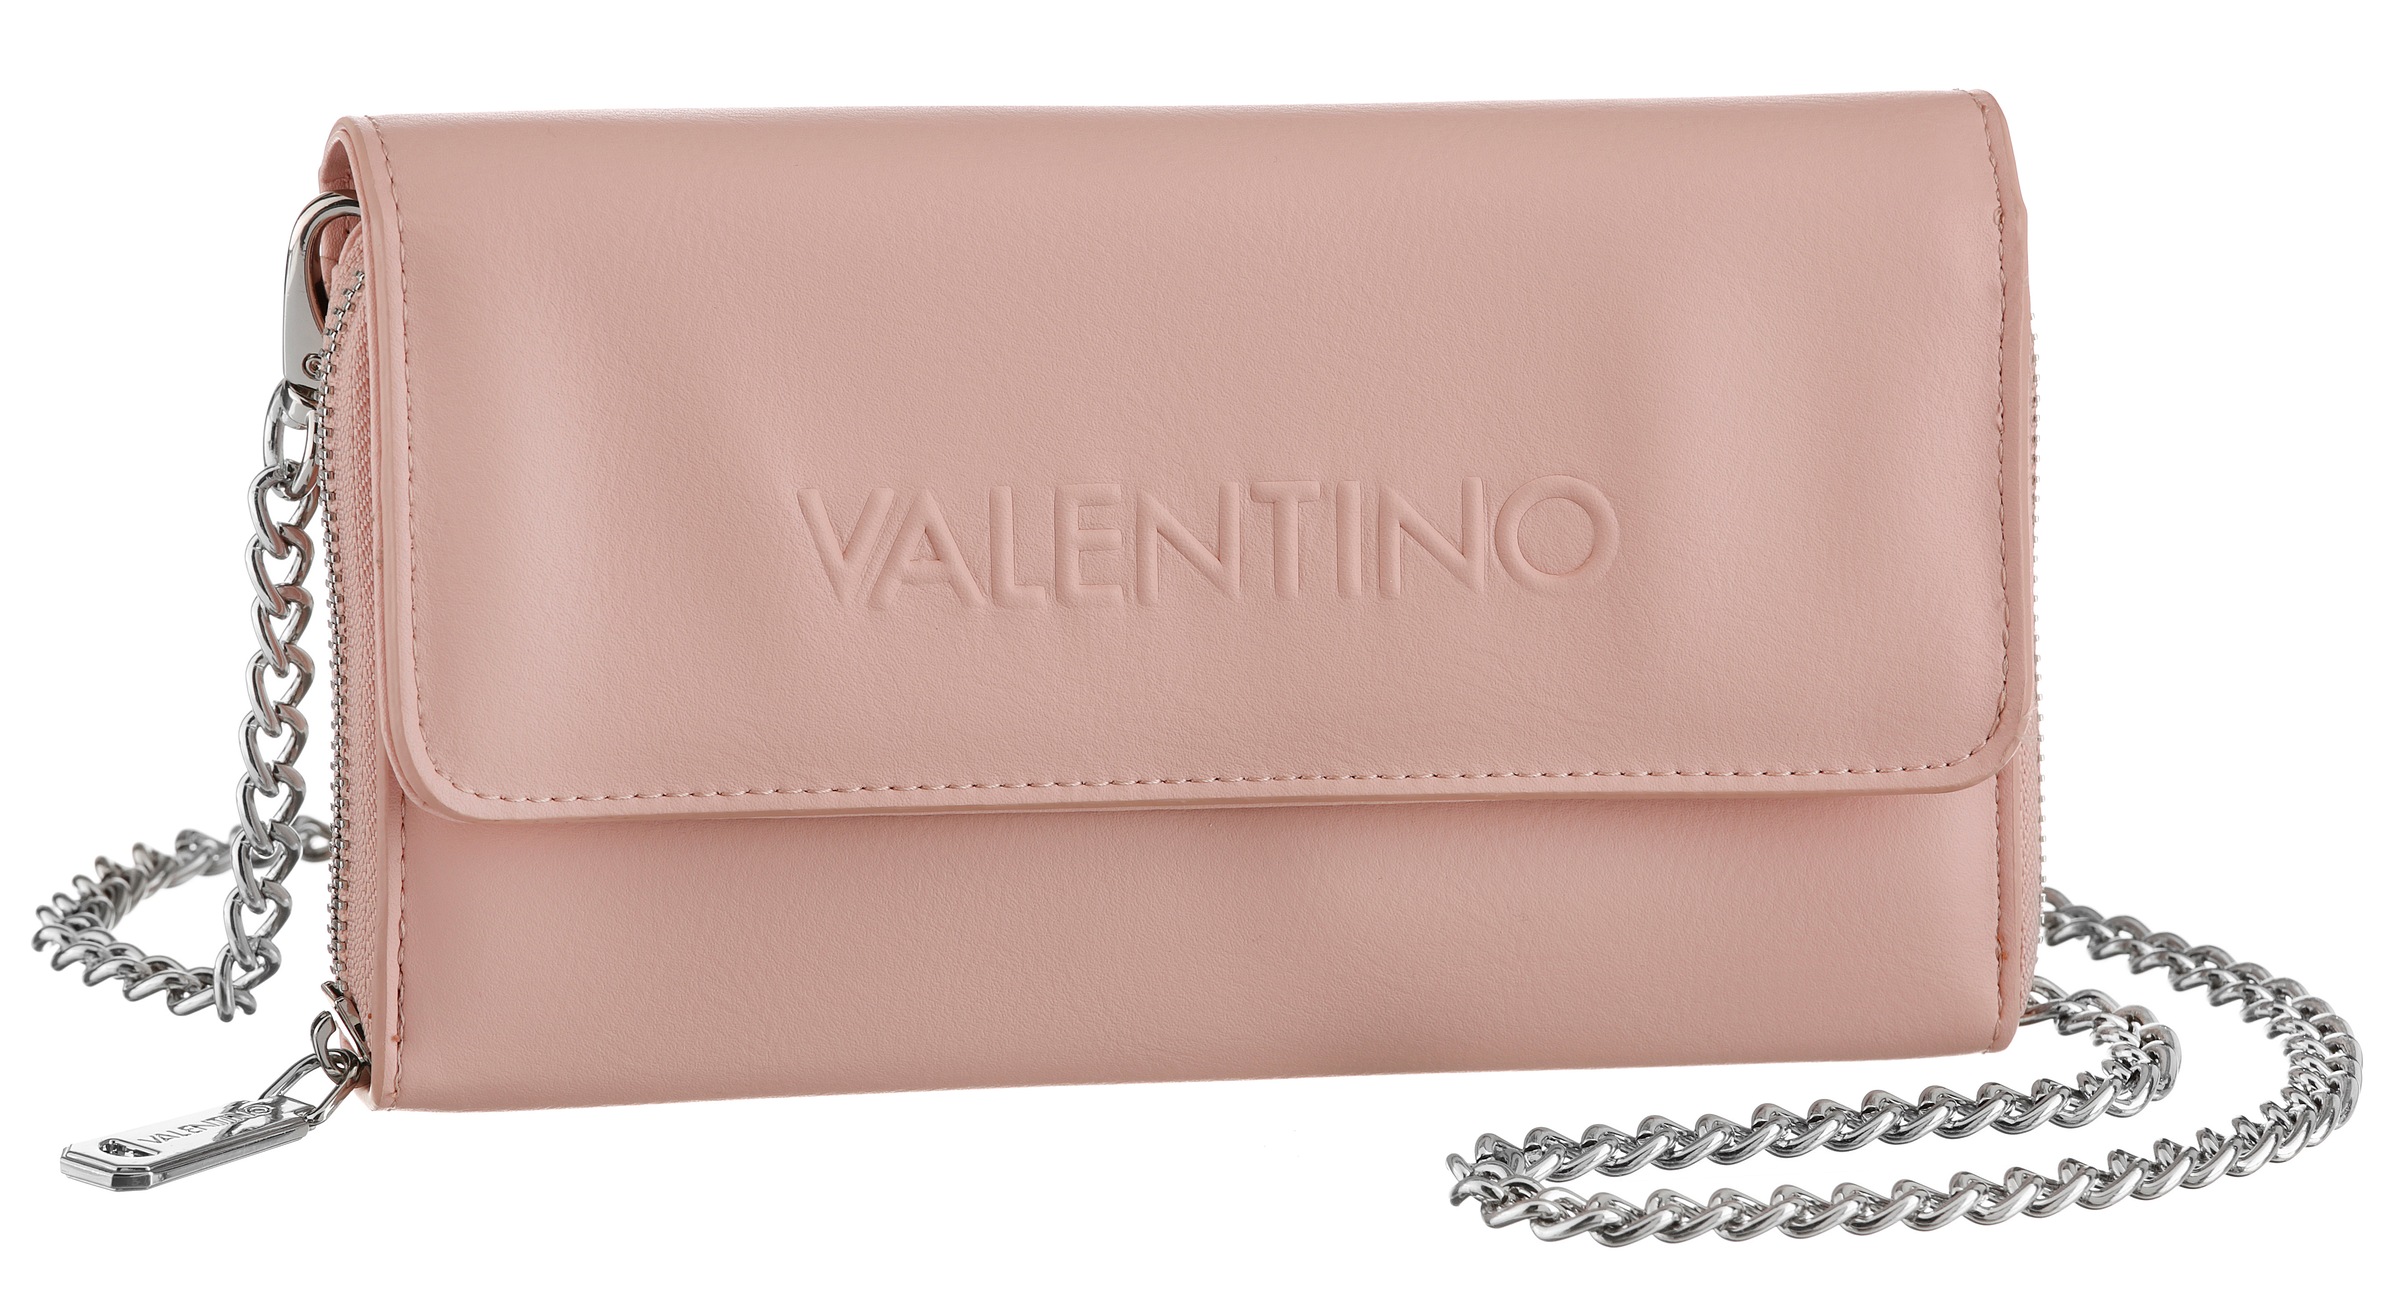 Valentino Handbags » Online auf Rechnung bestellen bei I\'m walking | Geldbörsen